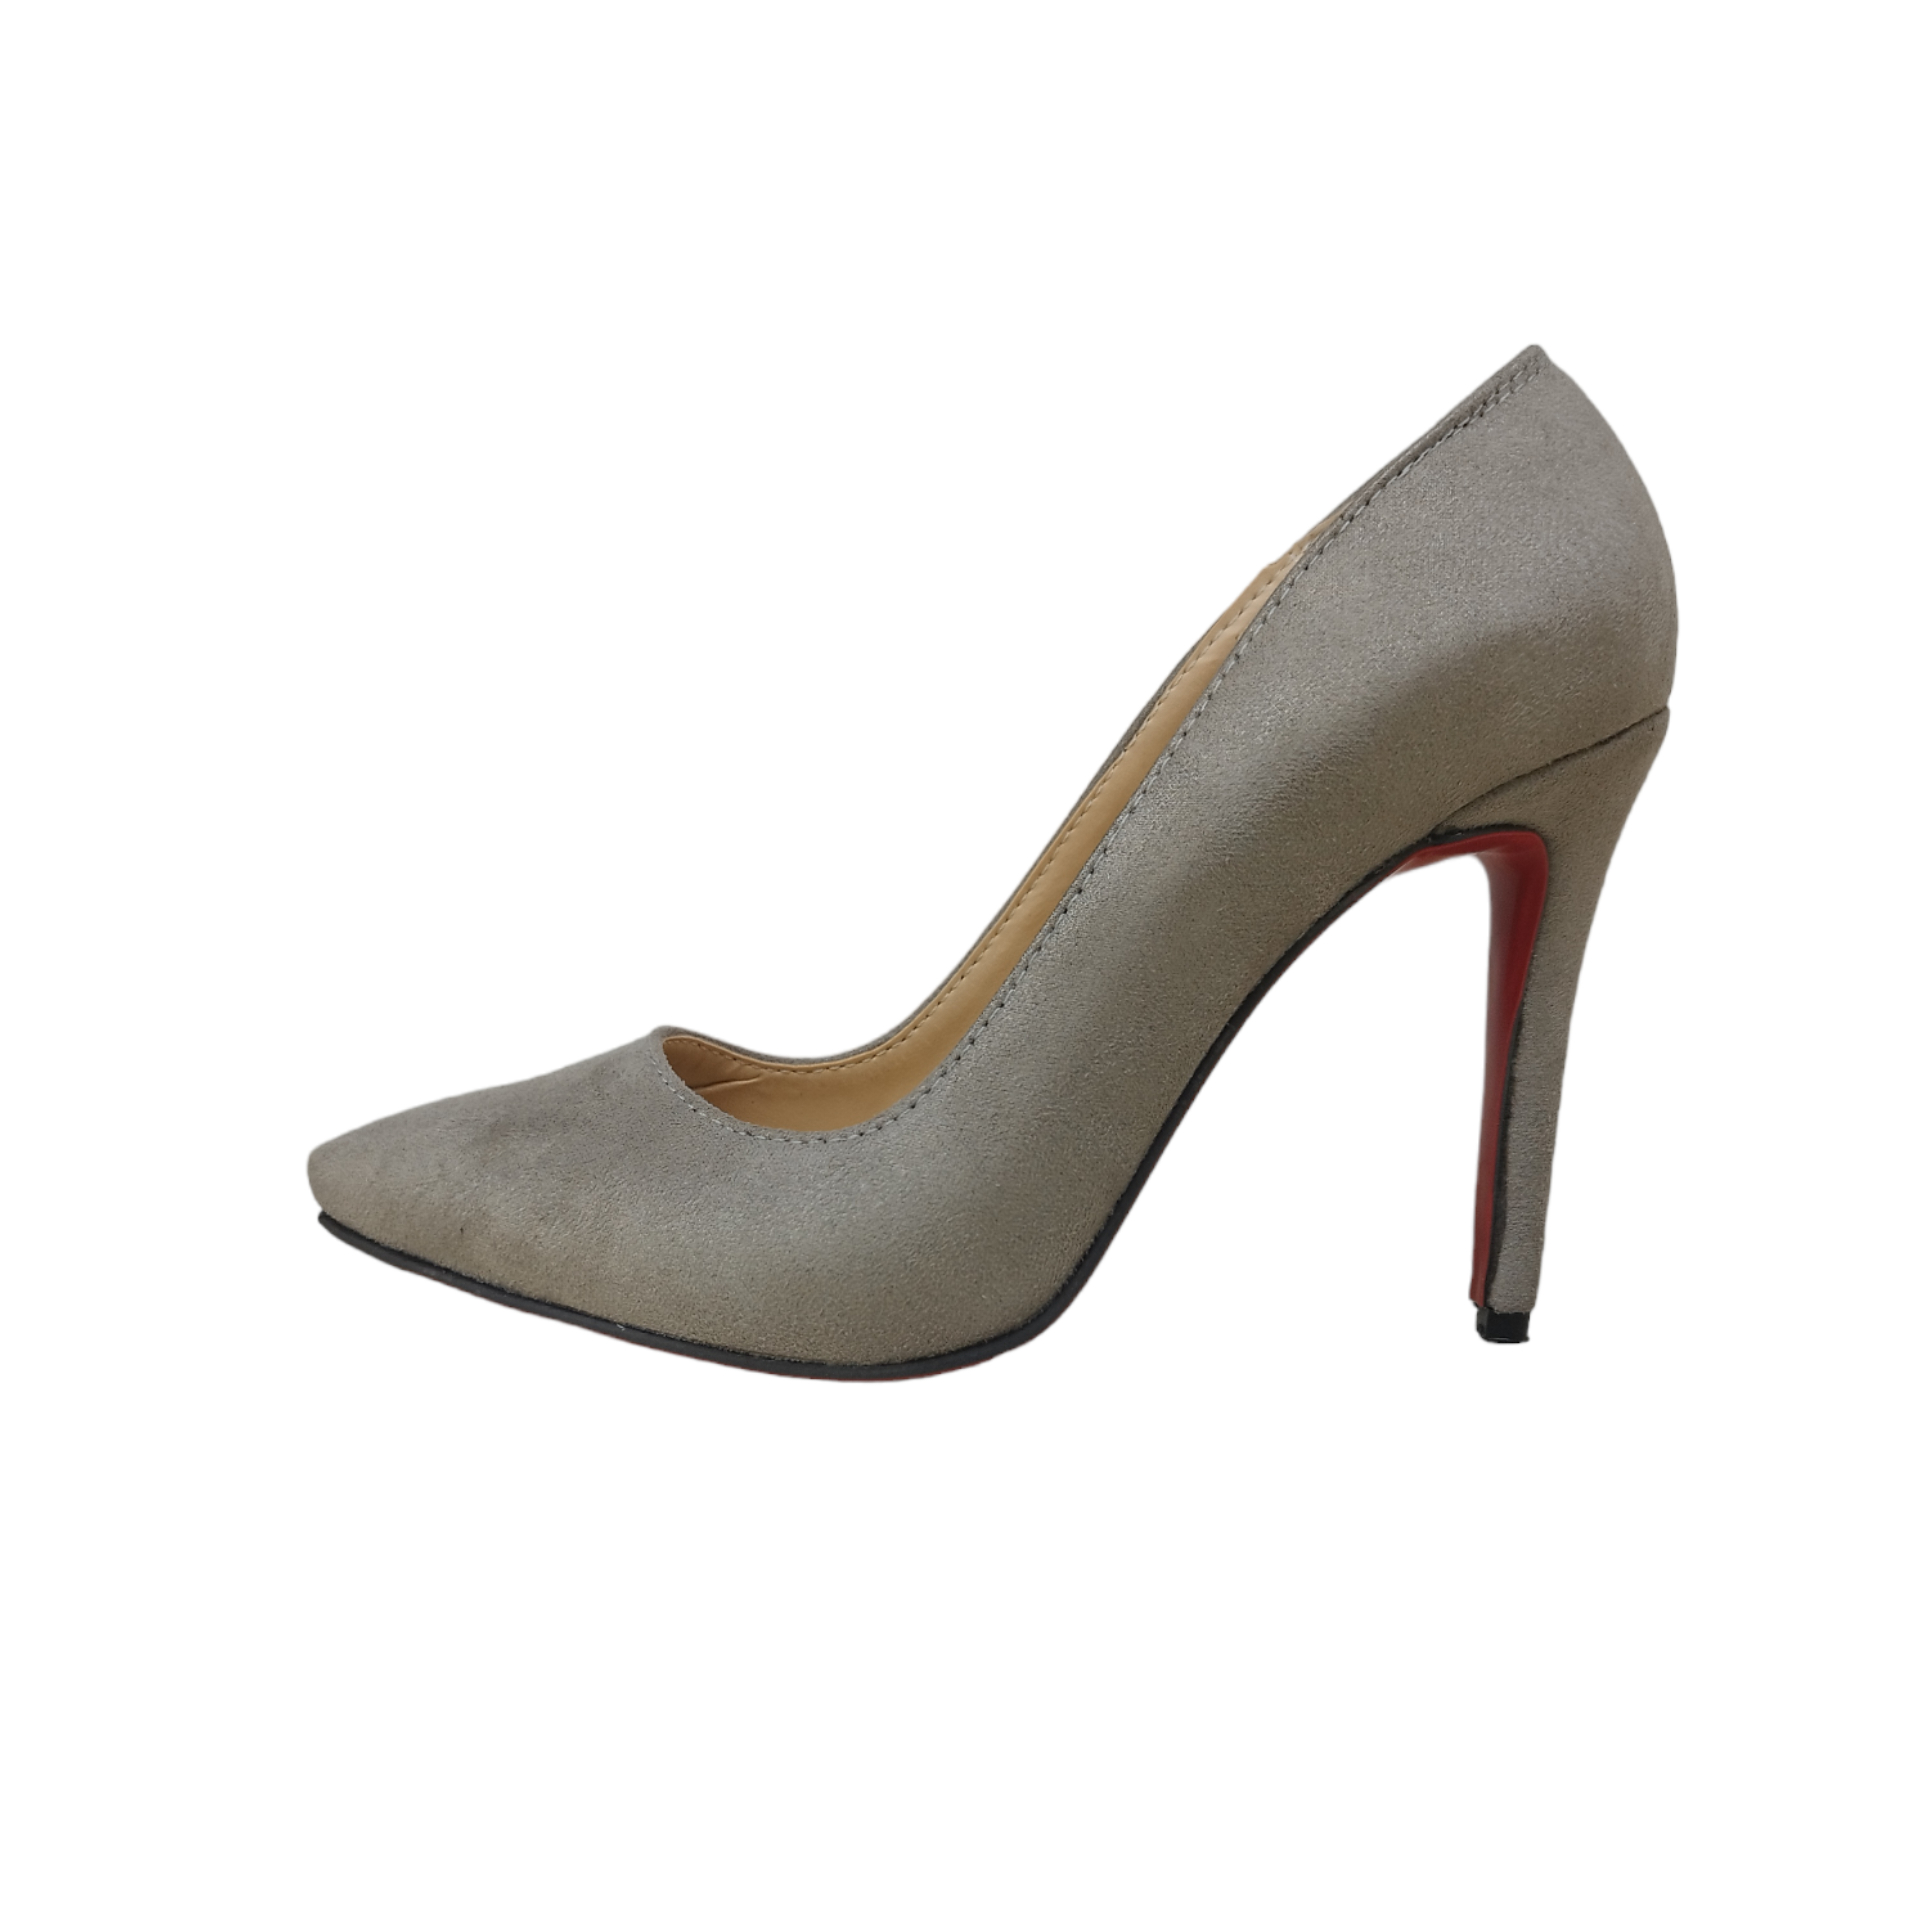 ✓ قیمت و مشخصات کفش زنانه گابور مدل 05.300.76 - زیراکو ✓